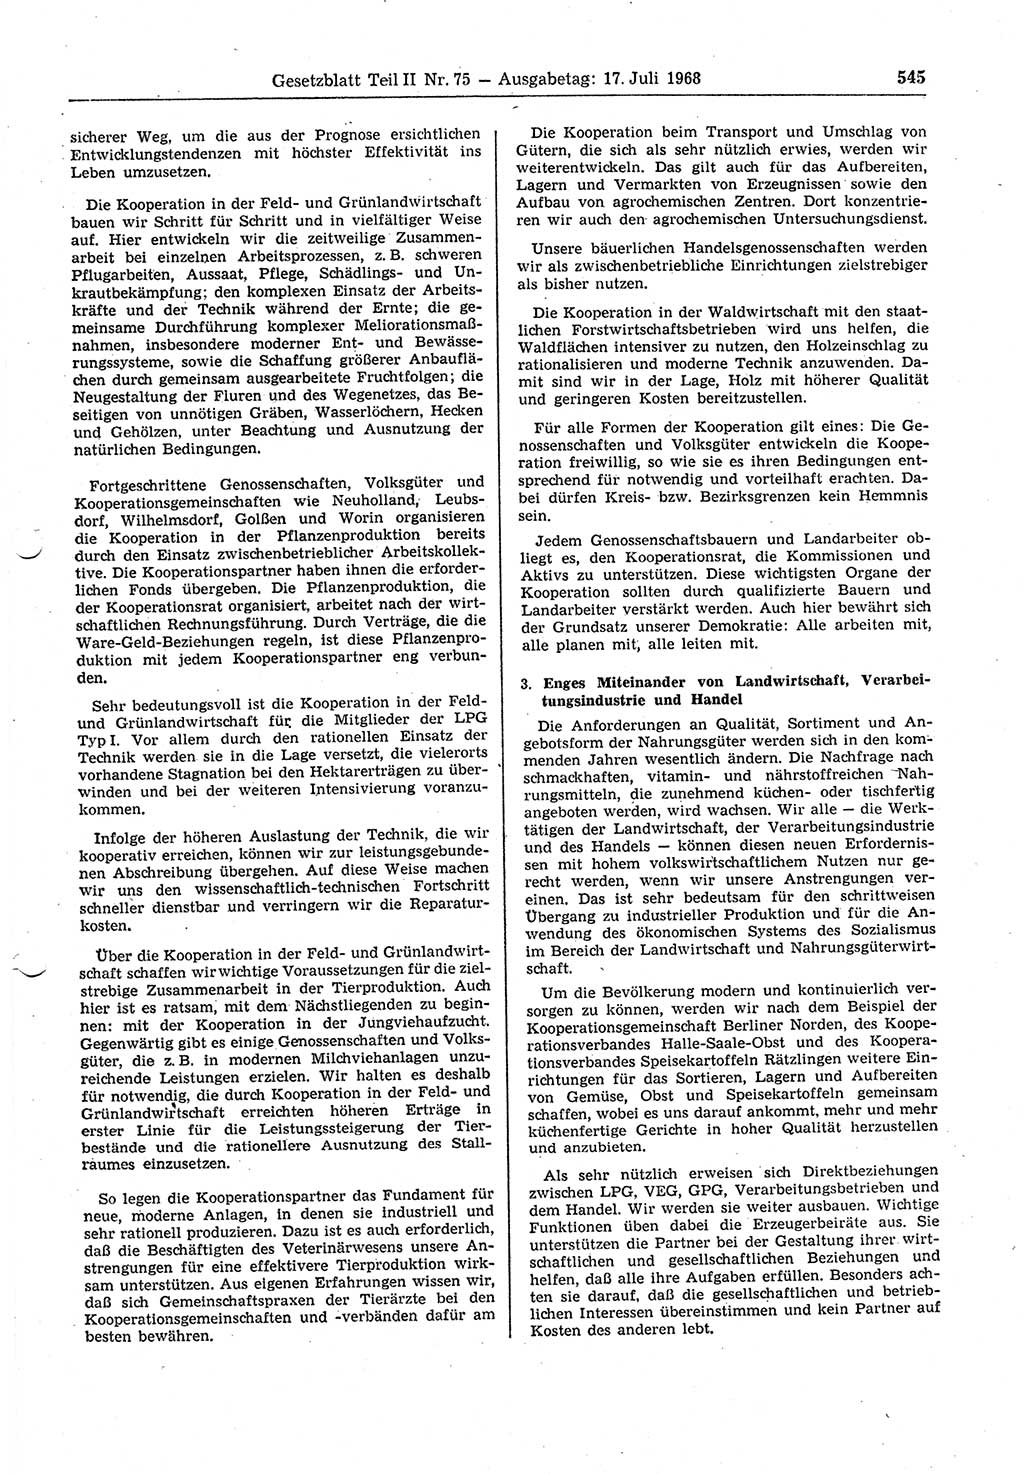 Gesetzblatt (GBl.) der Deutschen Demokratischen Republik (DDR) Teil ⅠⅠ 1968, Seite 545 (GBl. DDR ⅠⅠ 1968, S. 545)